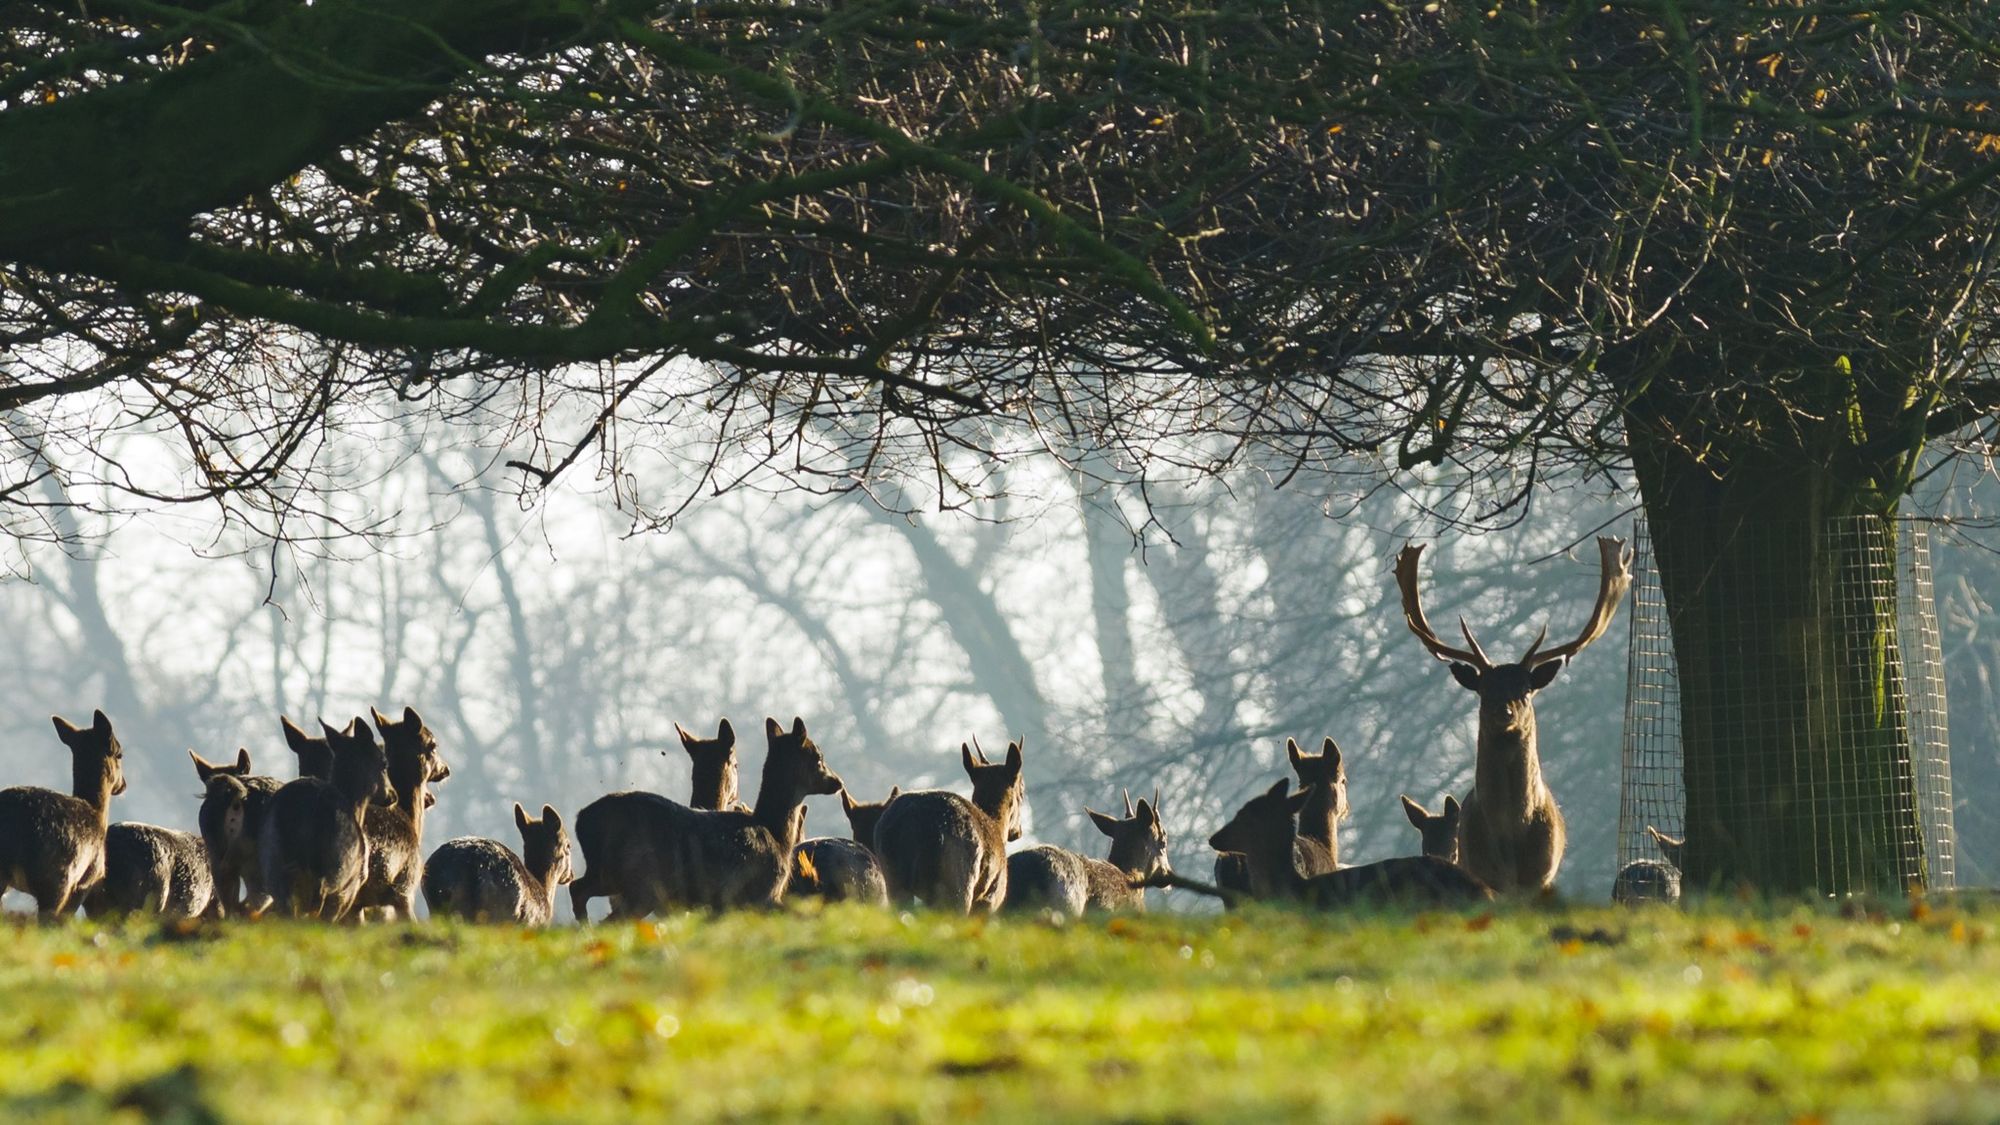 Scrivelsby Deer Park
© Alex Roddie